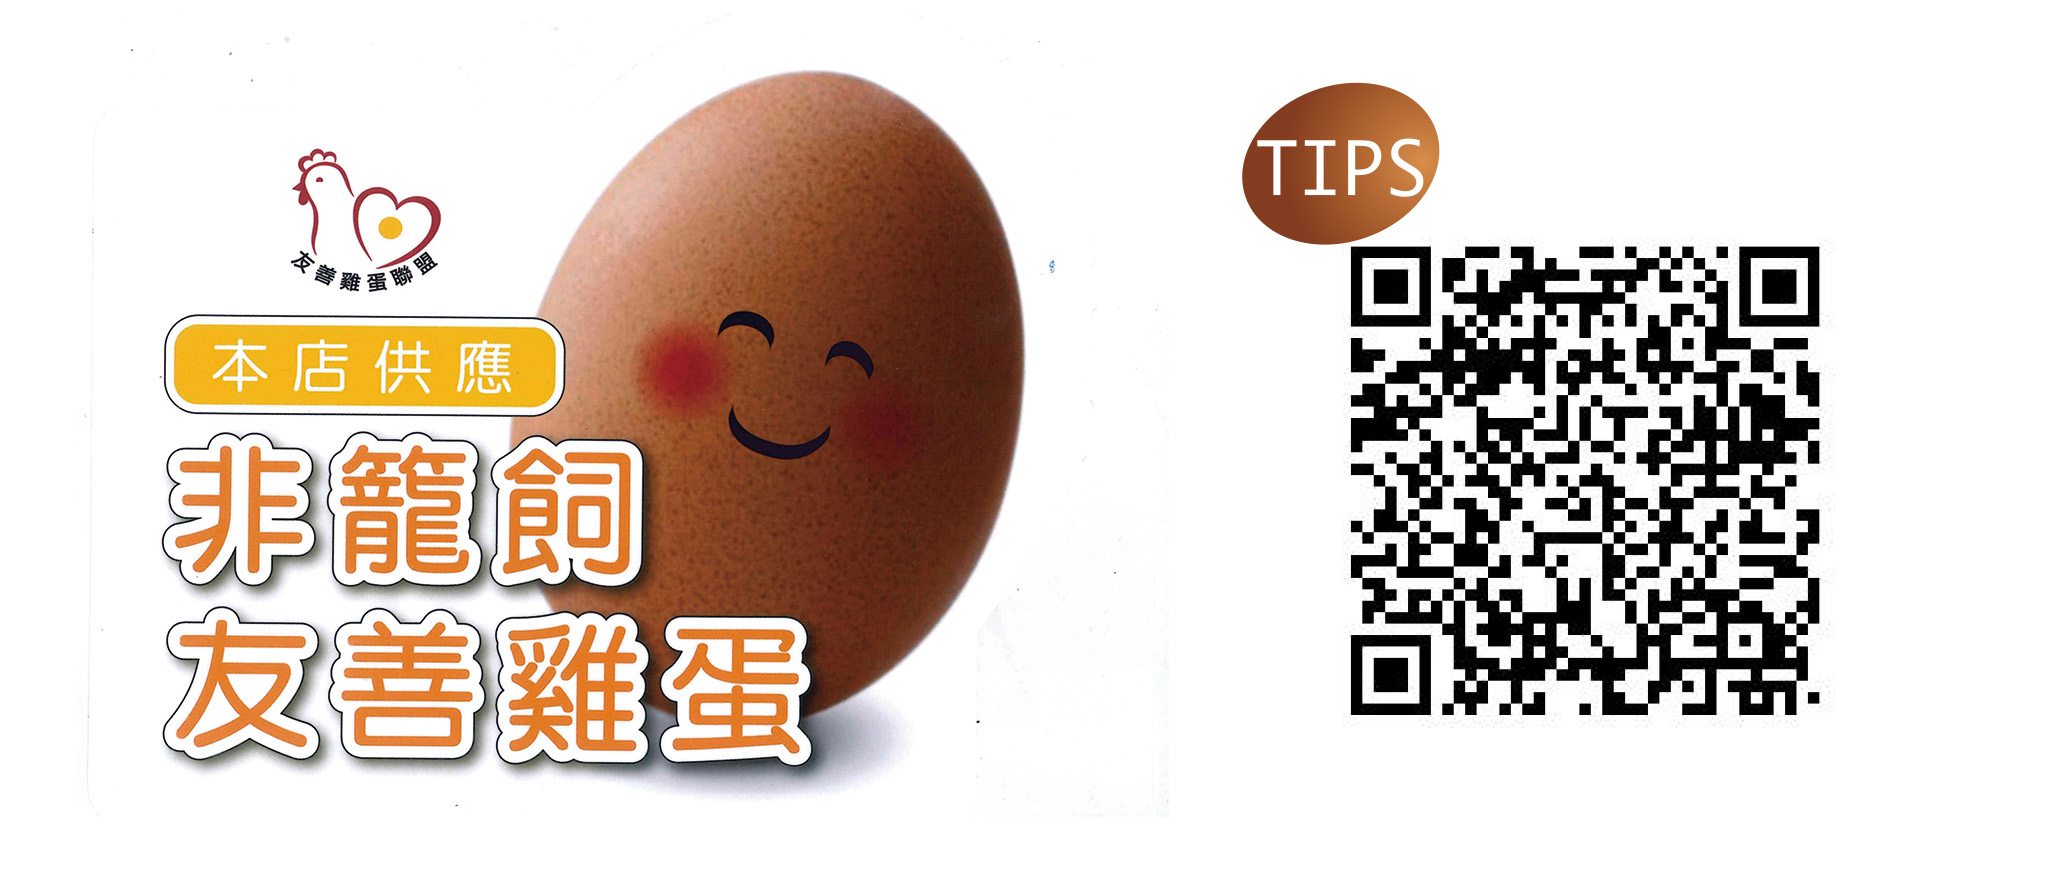 台灣動物社會研究會呼籲消費大眾購買「友善雞蛋聯盟」的雞蛋，掃描圖右QR CODE直接找牧場買蛋。